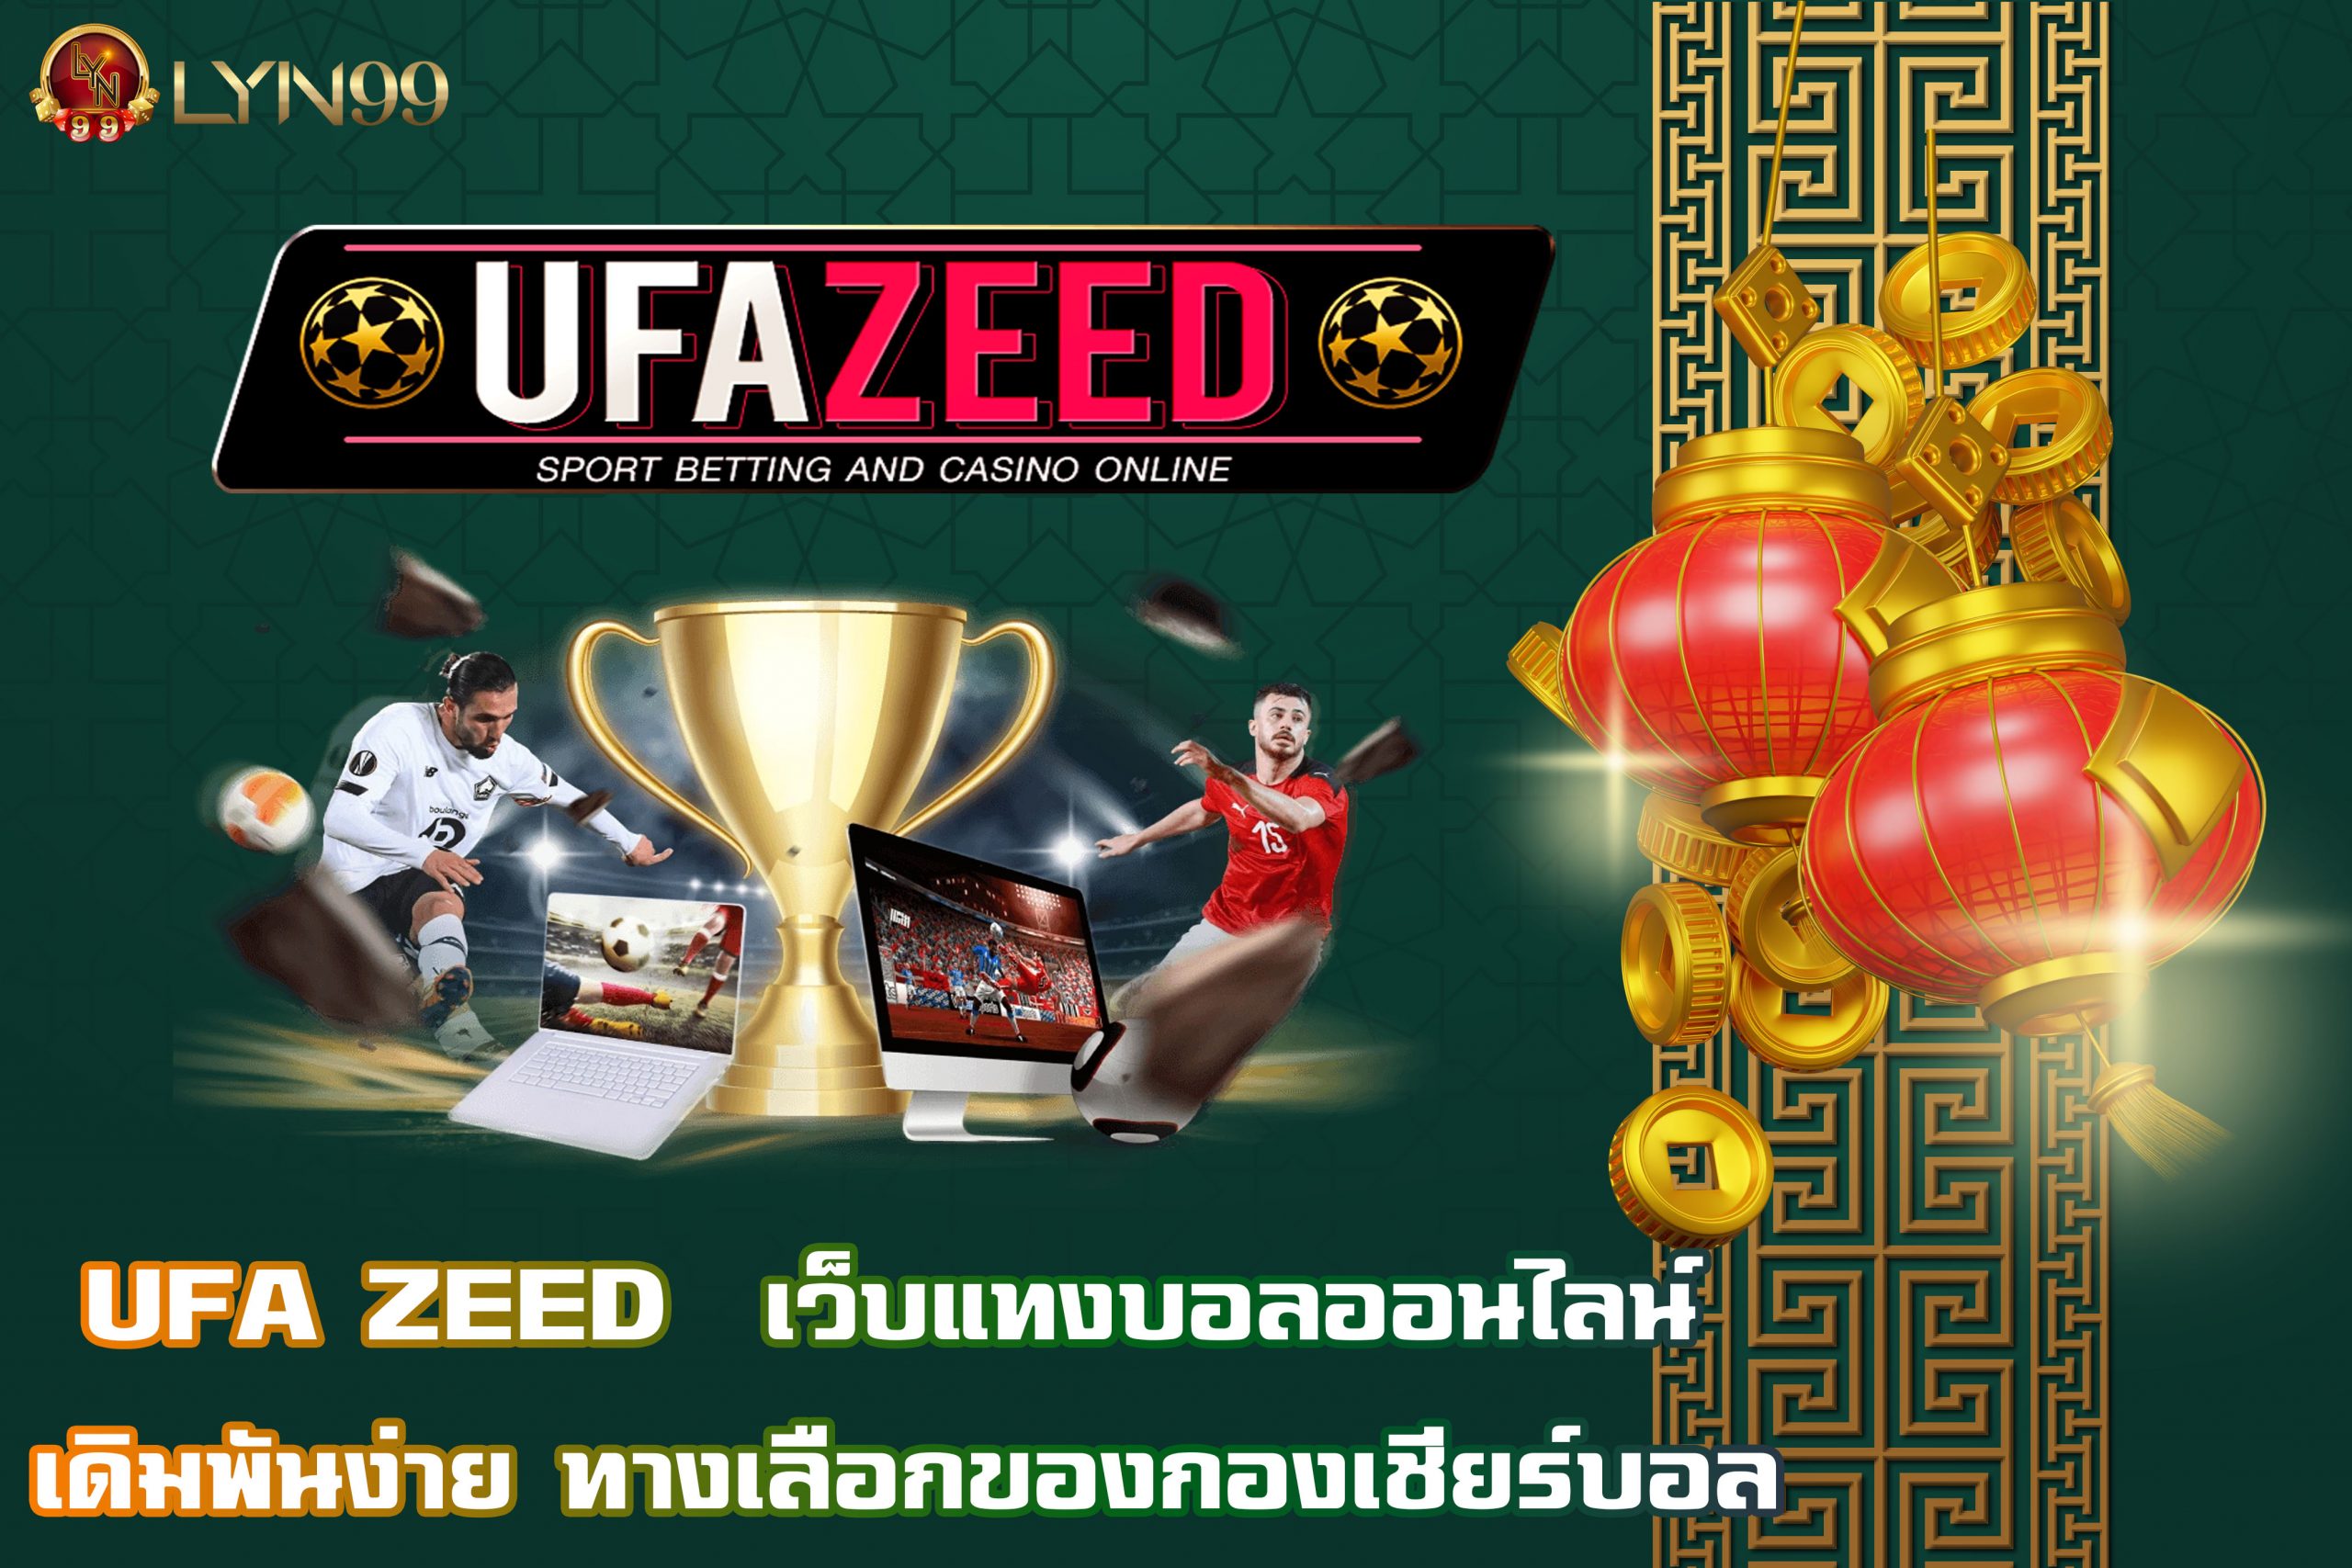 UFA ZEED  เว็บแทงบอลออนไลน์  เดิมพันง่าย ทางเลือกของกองเชียร์บอล